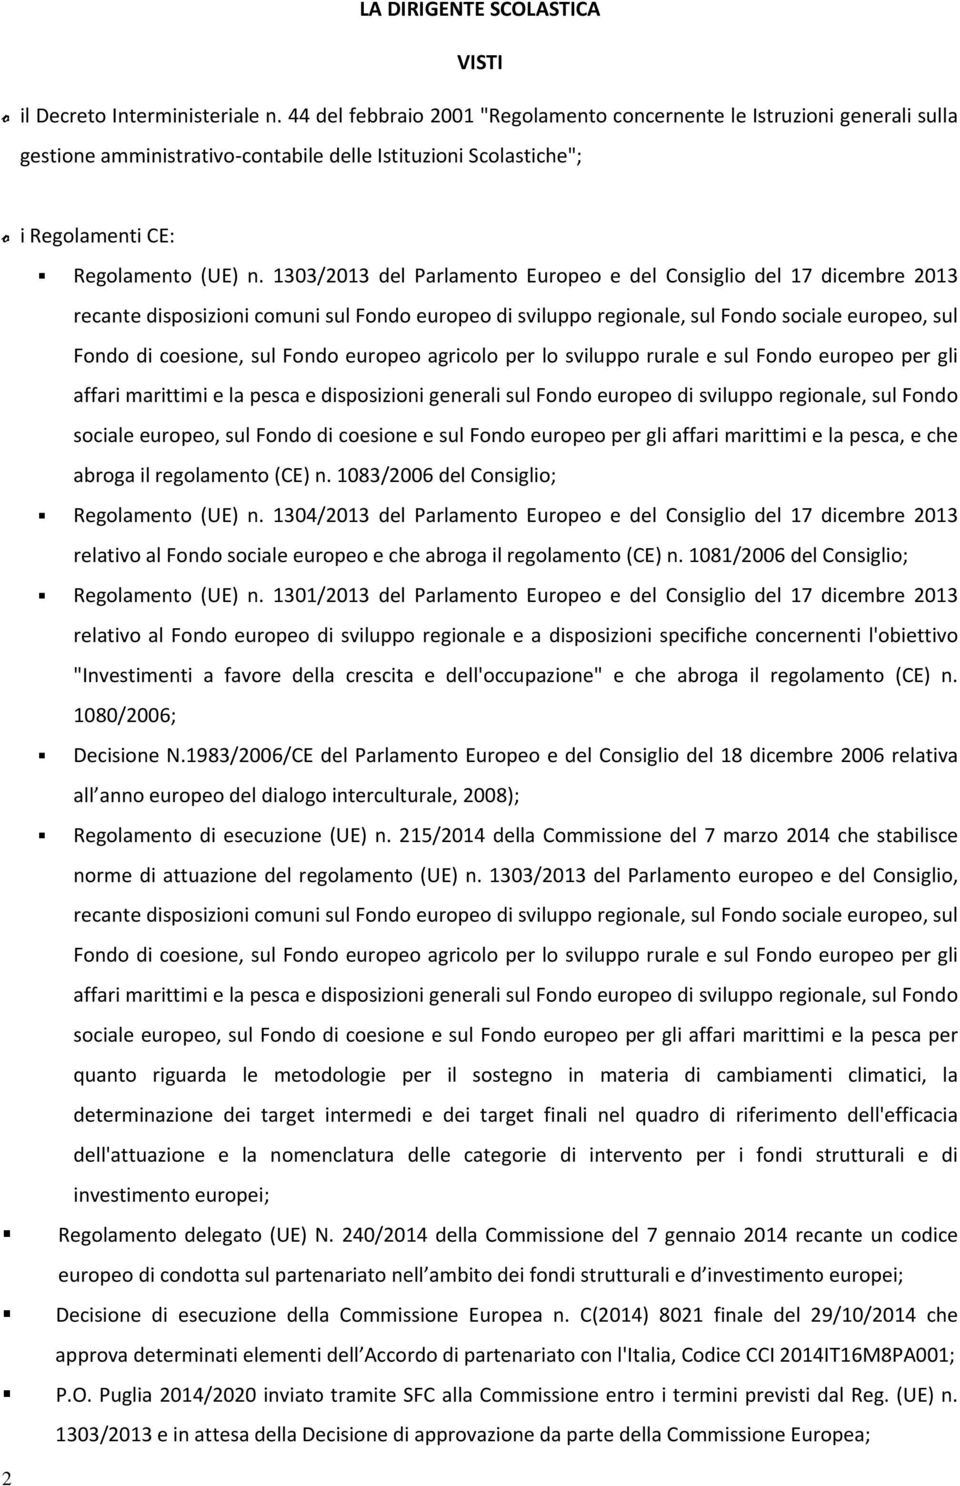 1303/2013 del Parlamento Europeo e del Consiglio del 17 dicembre 2013 recante disposizioni comuni sul Fondo europeo di sviluppo regionale, sul Fondo sociale europeo, sul Fondo di coesione, sul Fondo